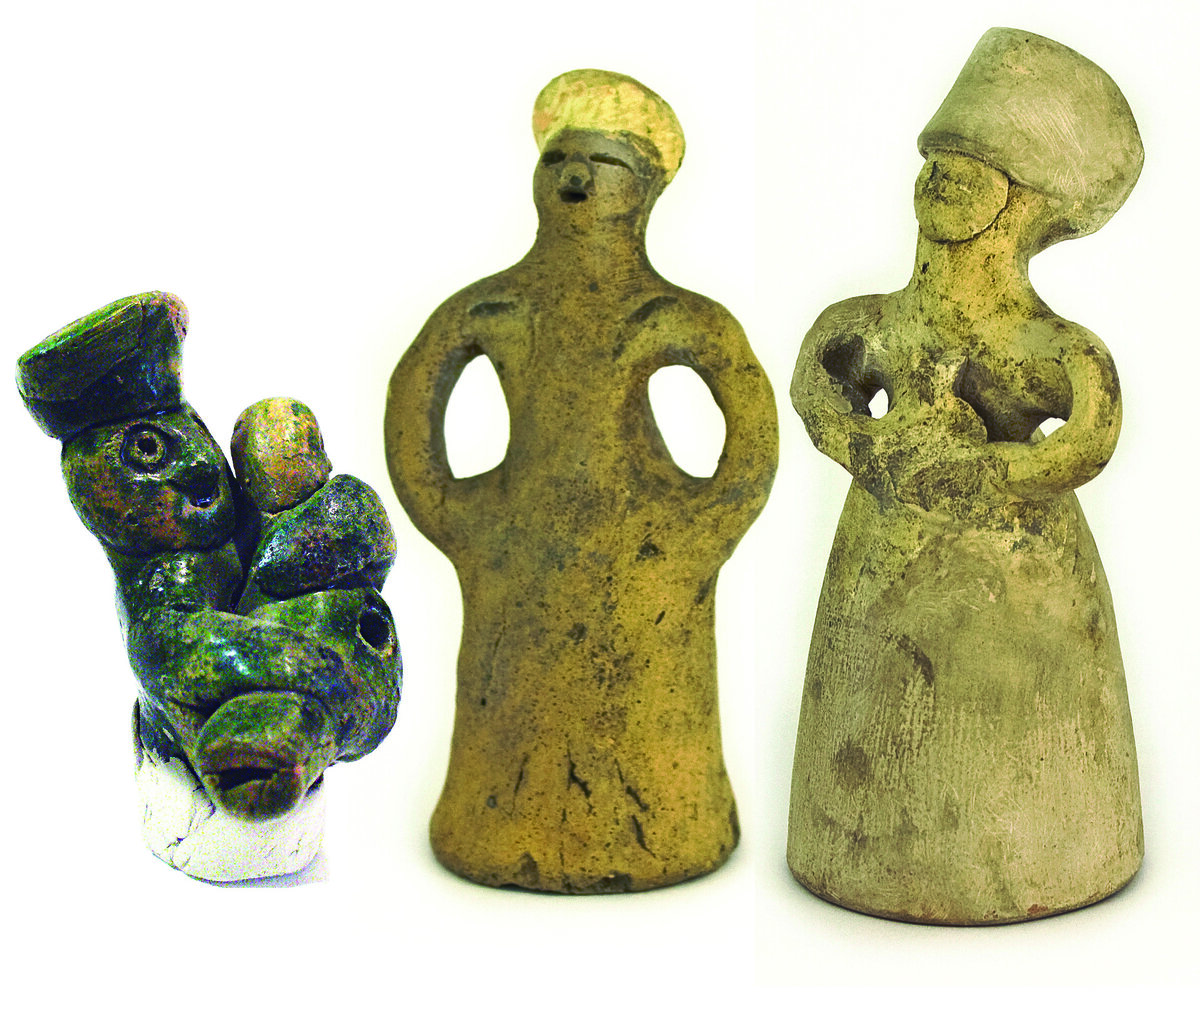 Древние игрушки для детей. Древнерусские игрушки из глины. Древние глиняные игрушки. Глиняная кукла старинная. Игрушечные промыслы возникшие еще